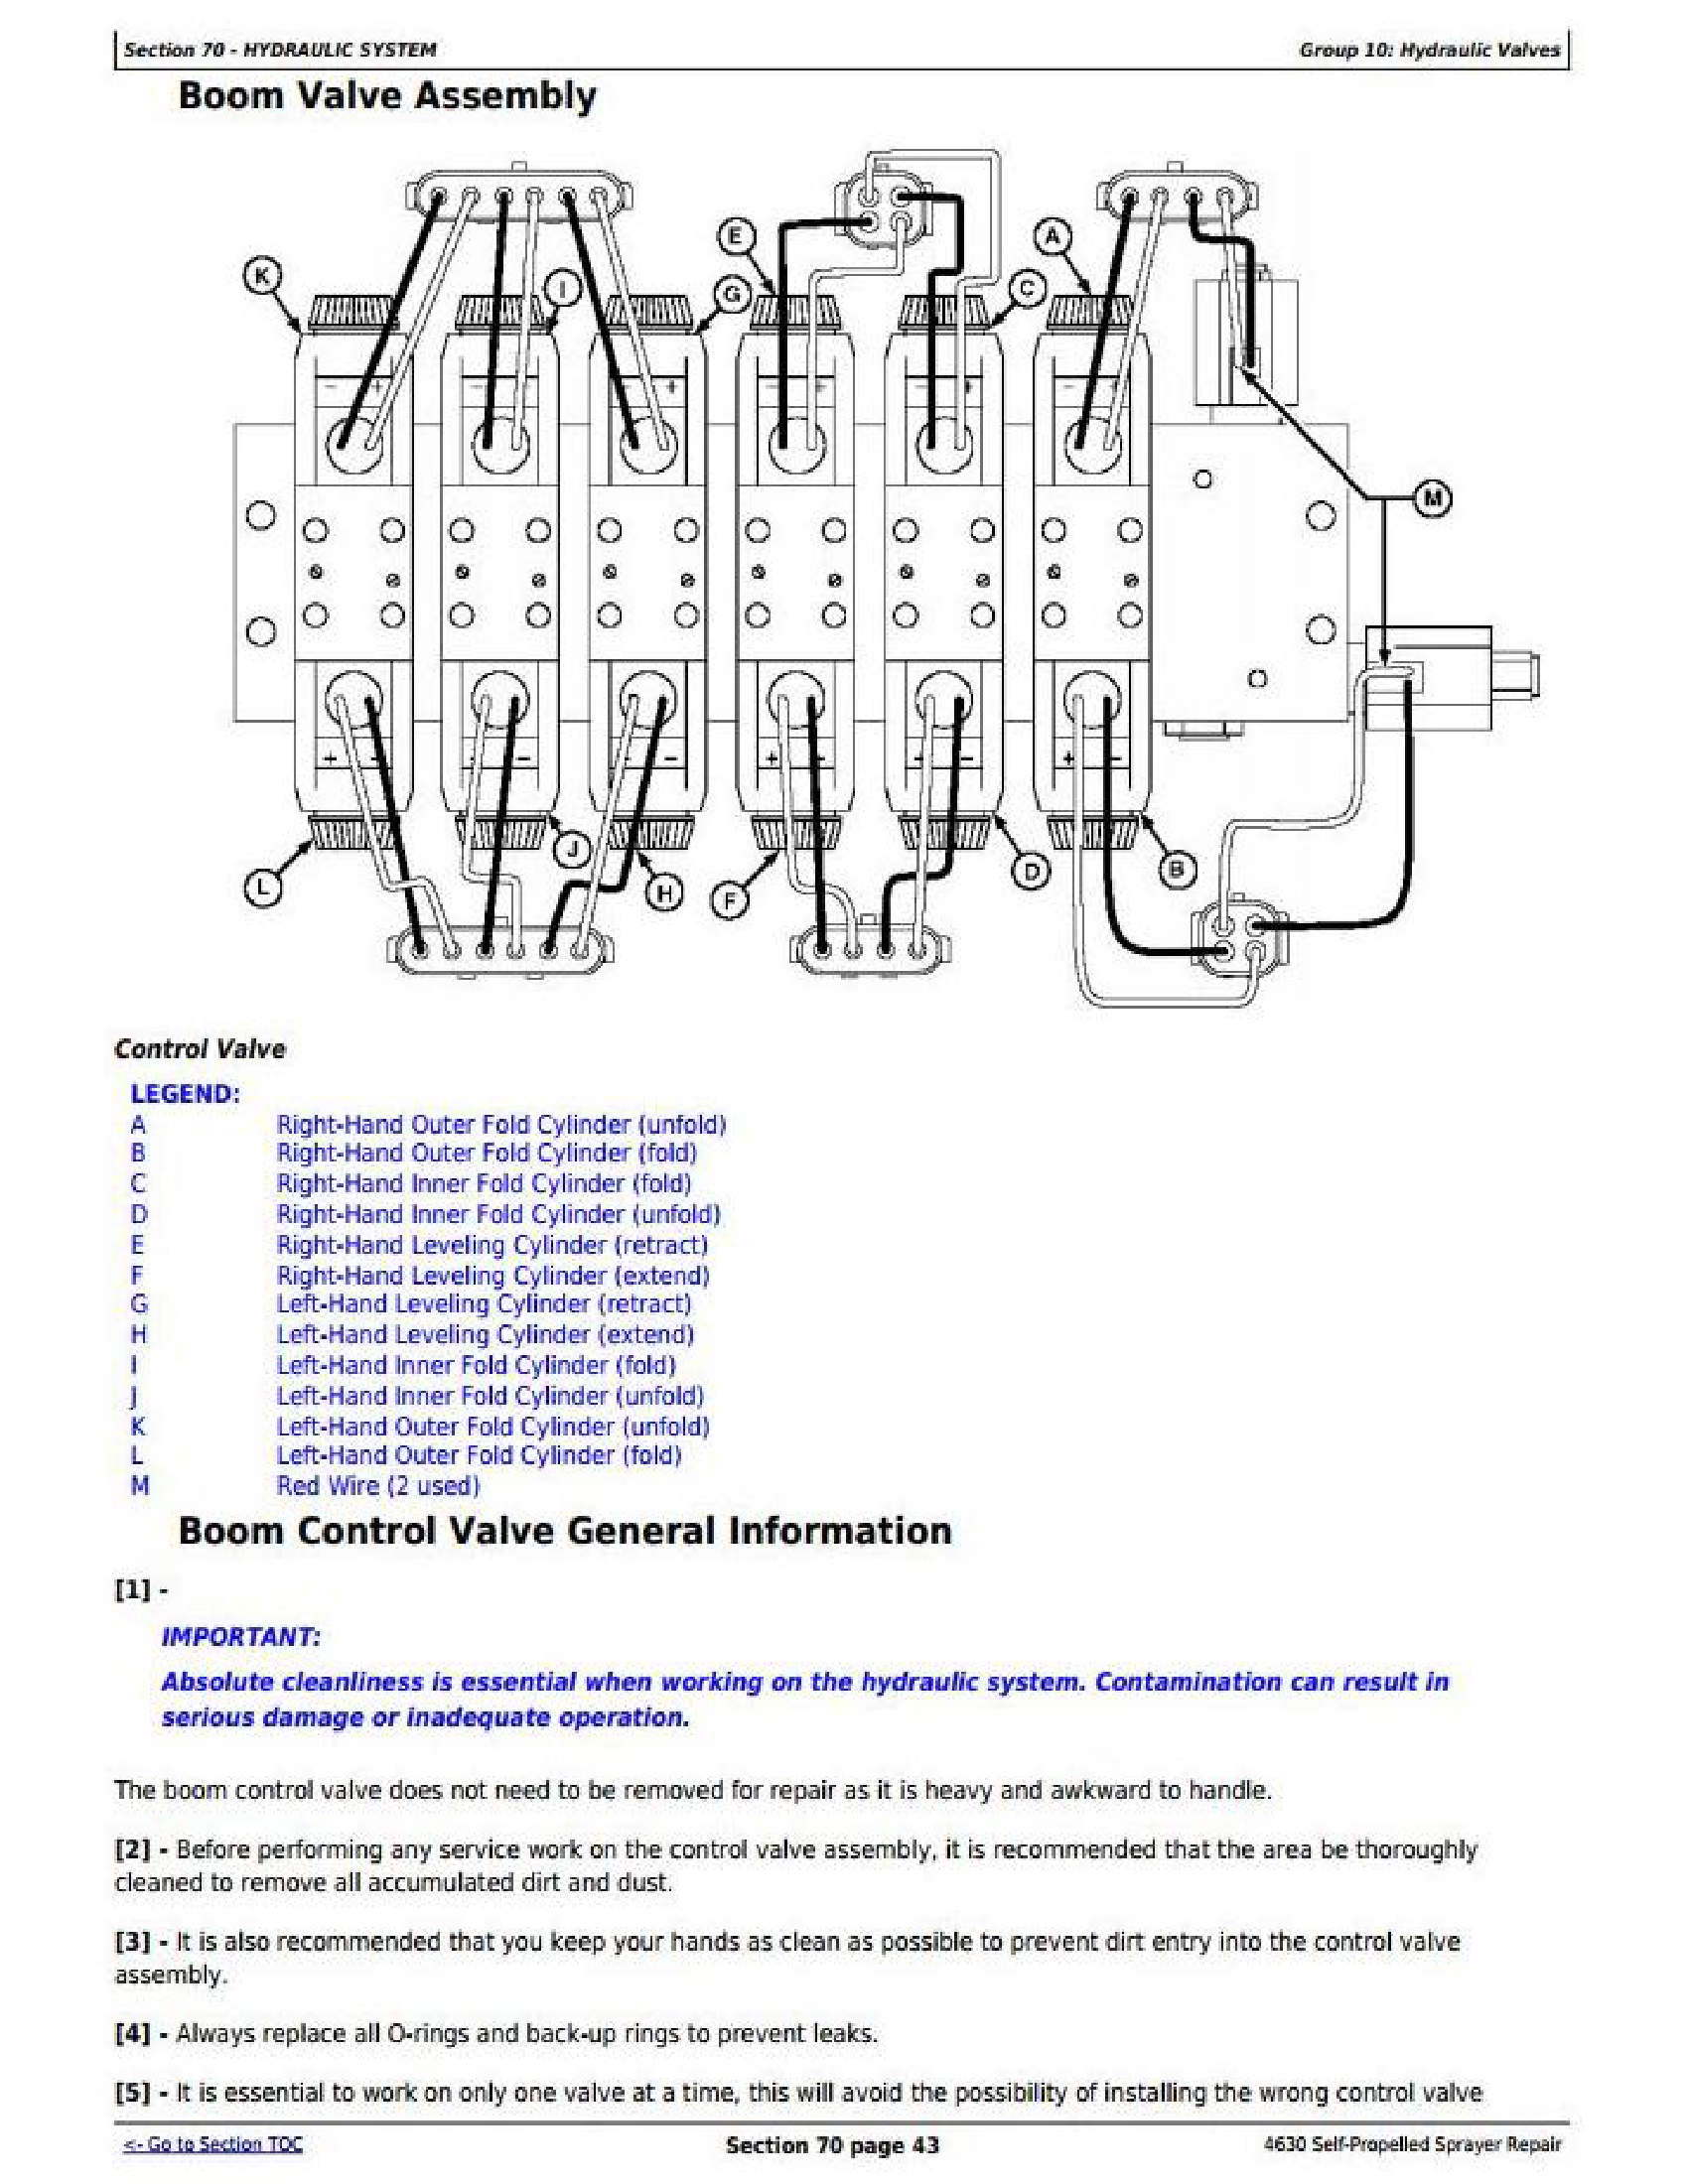 John Deere 1600 manual pdf